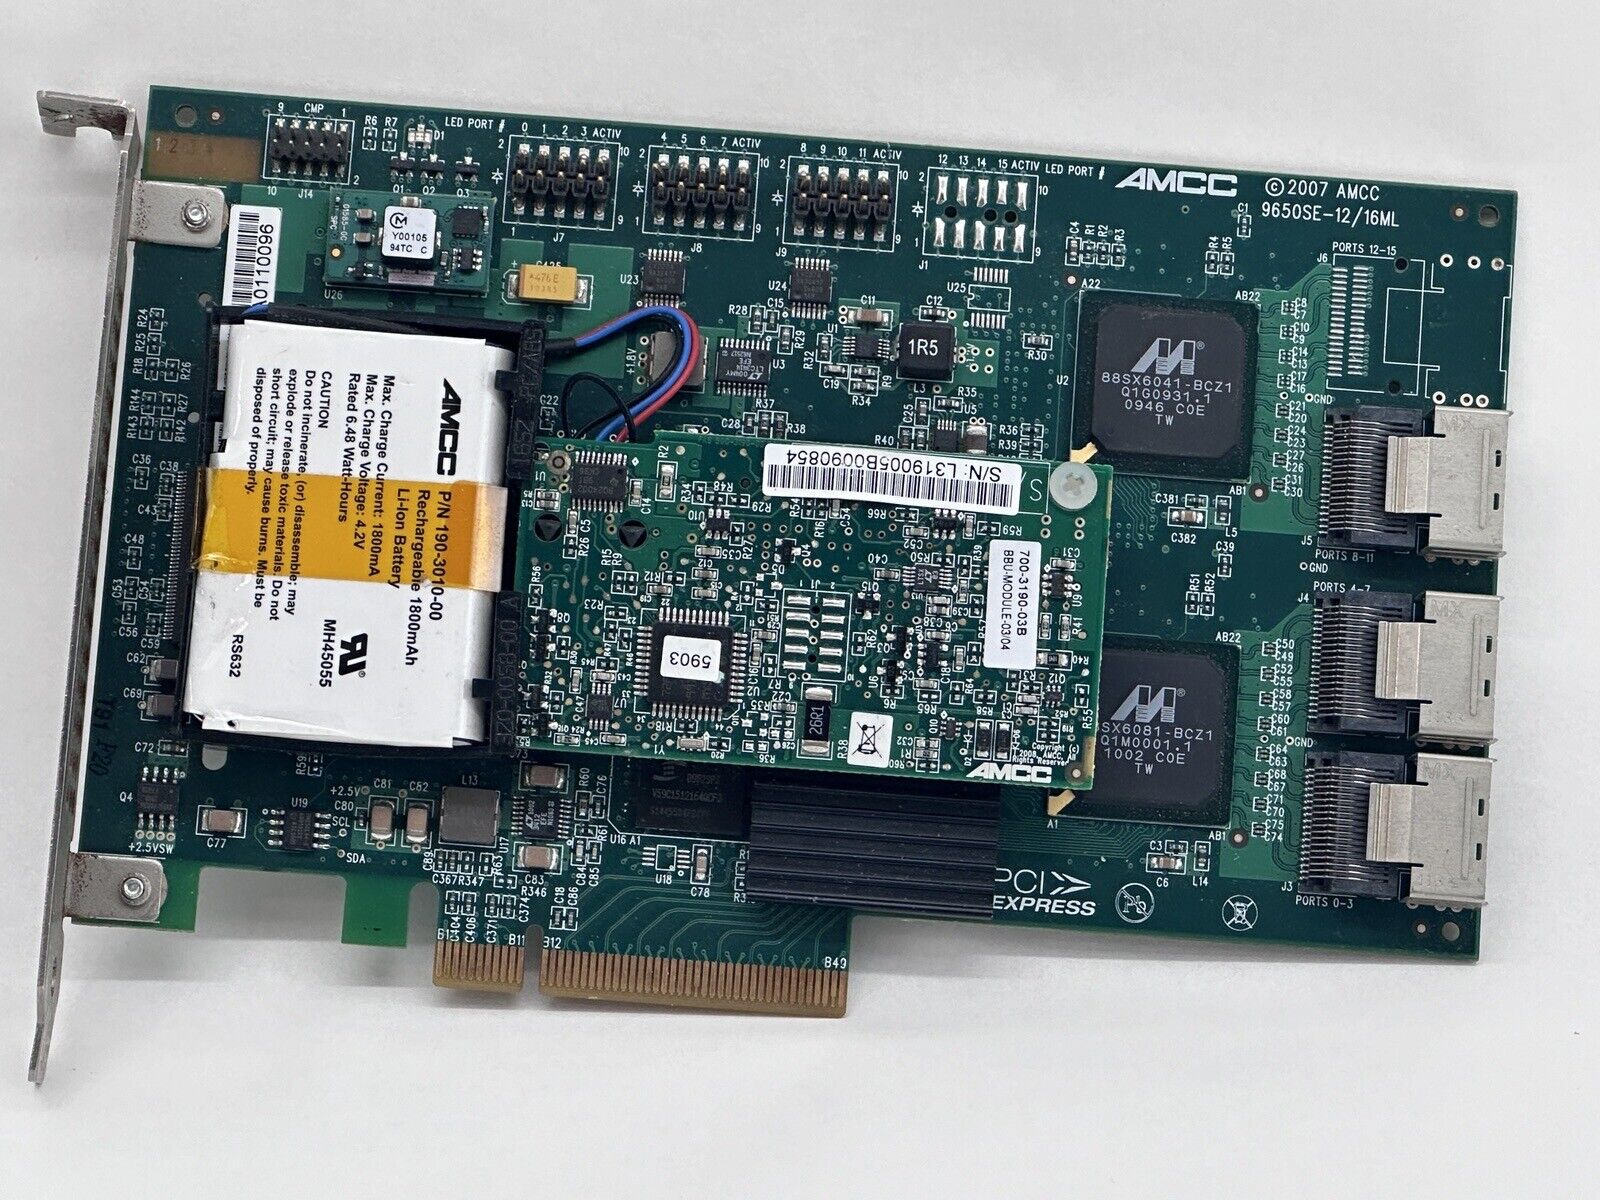 AMCC 3Ware 9650SE-12/16ML 12 Port SATA 256MB PCI-E RAID Controller w/ BBU F S/H